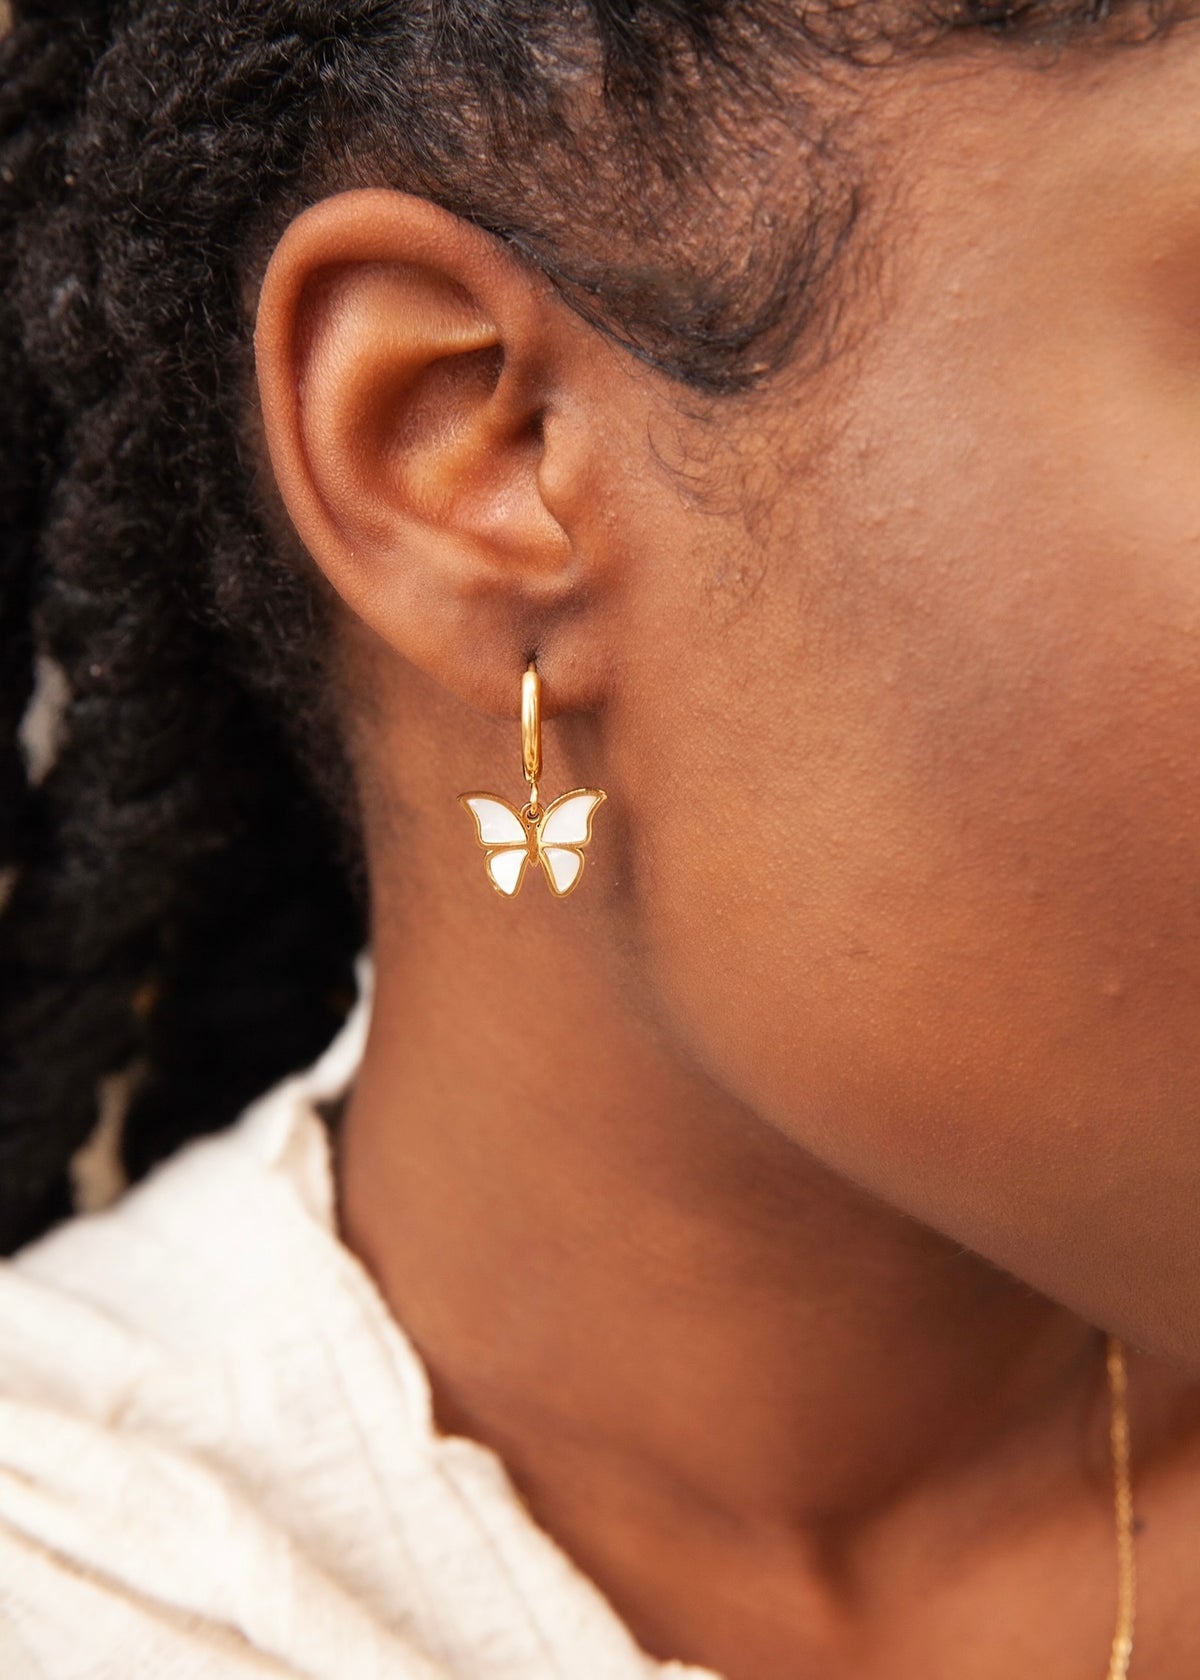 Butterfly Earring Bundle - Teardrop Earrings PNG - Inspire Uplift